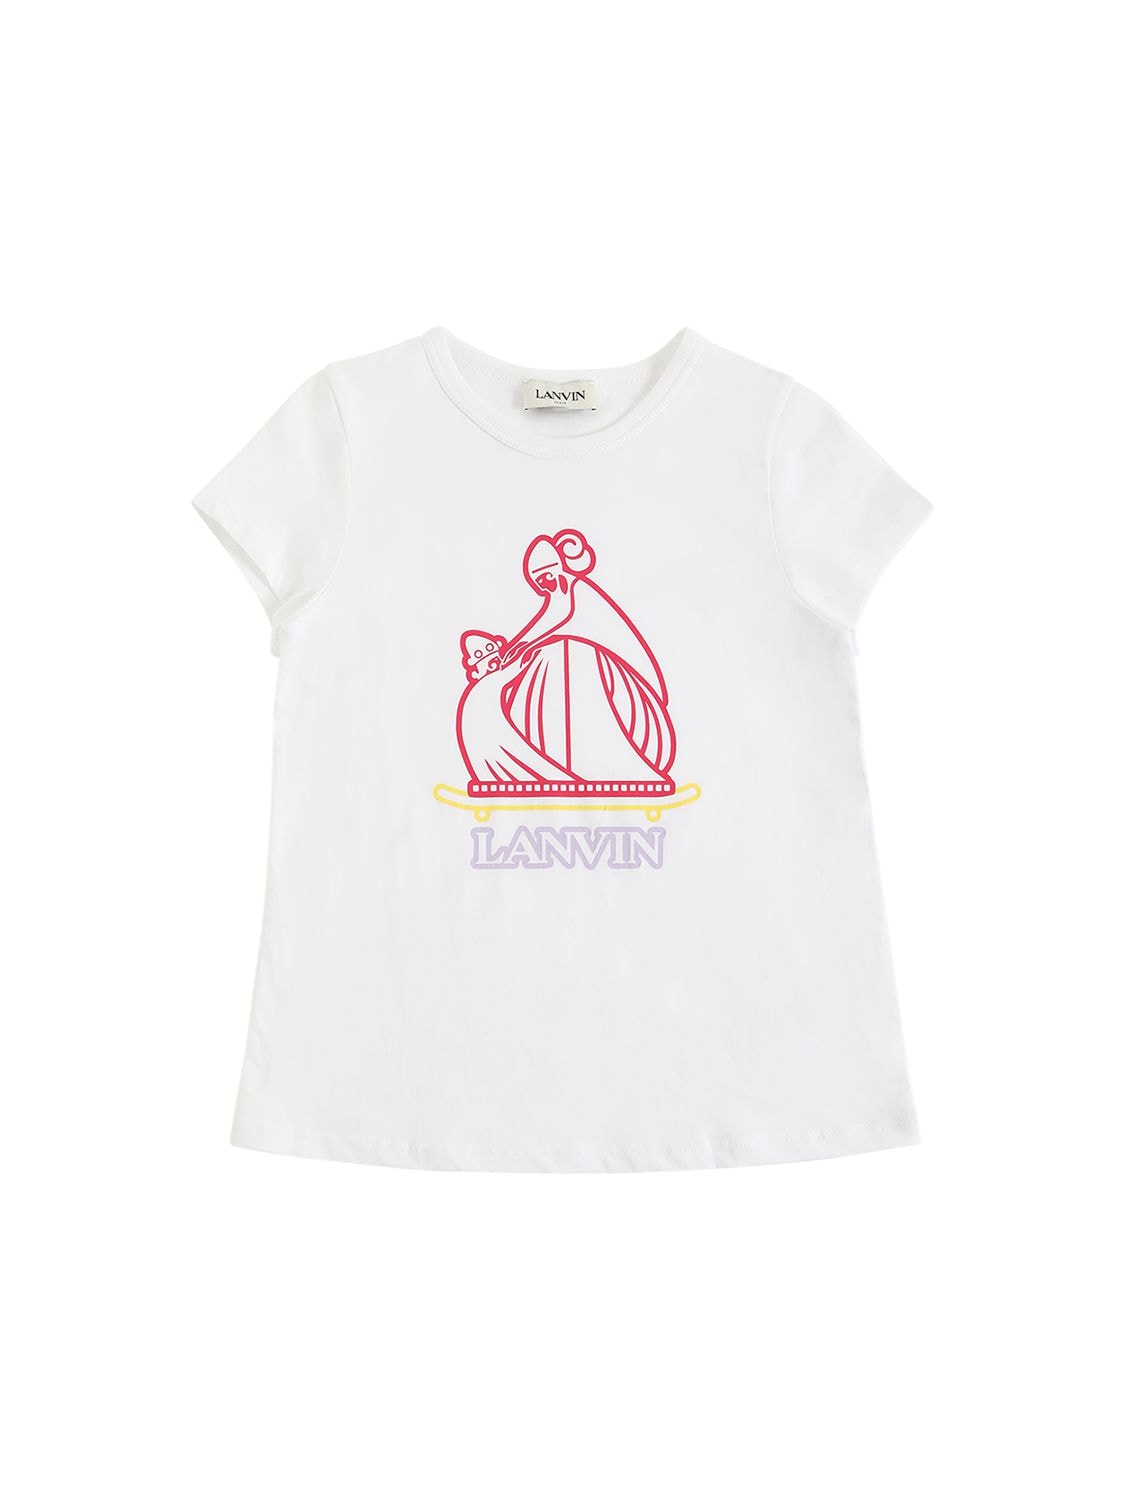 Lanvin Kids' Printed Logo Cotton Jersey T-shirt In White